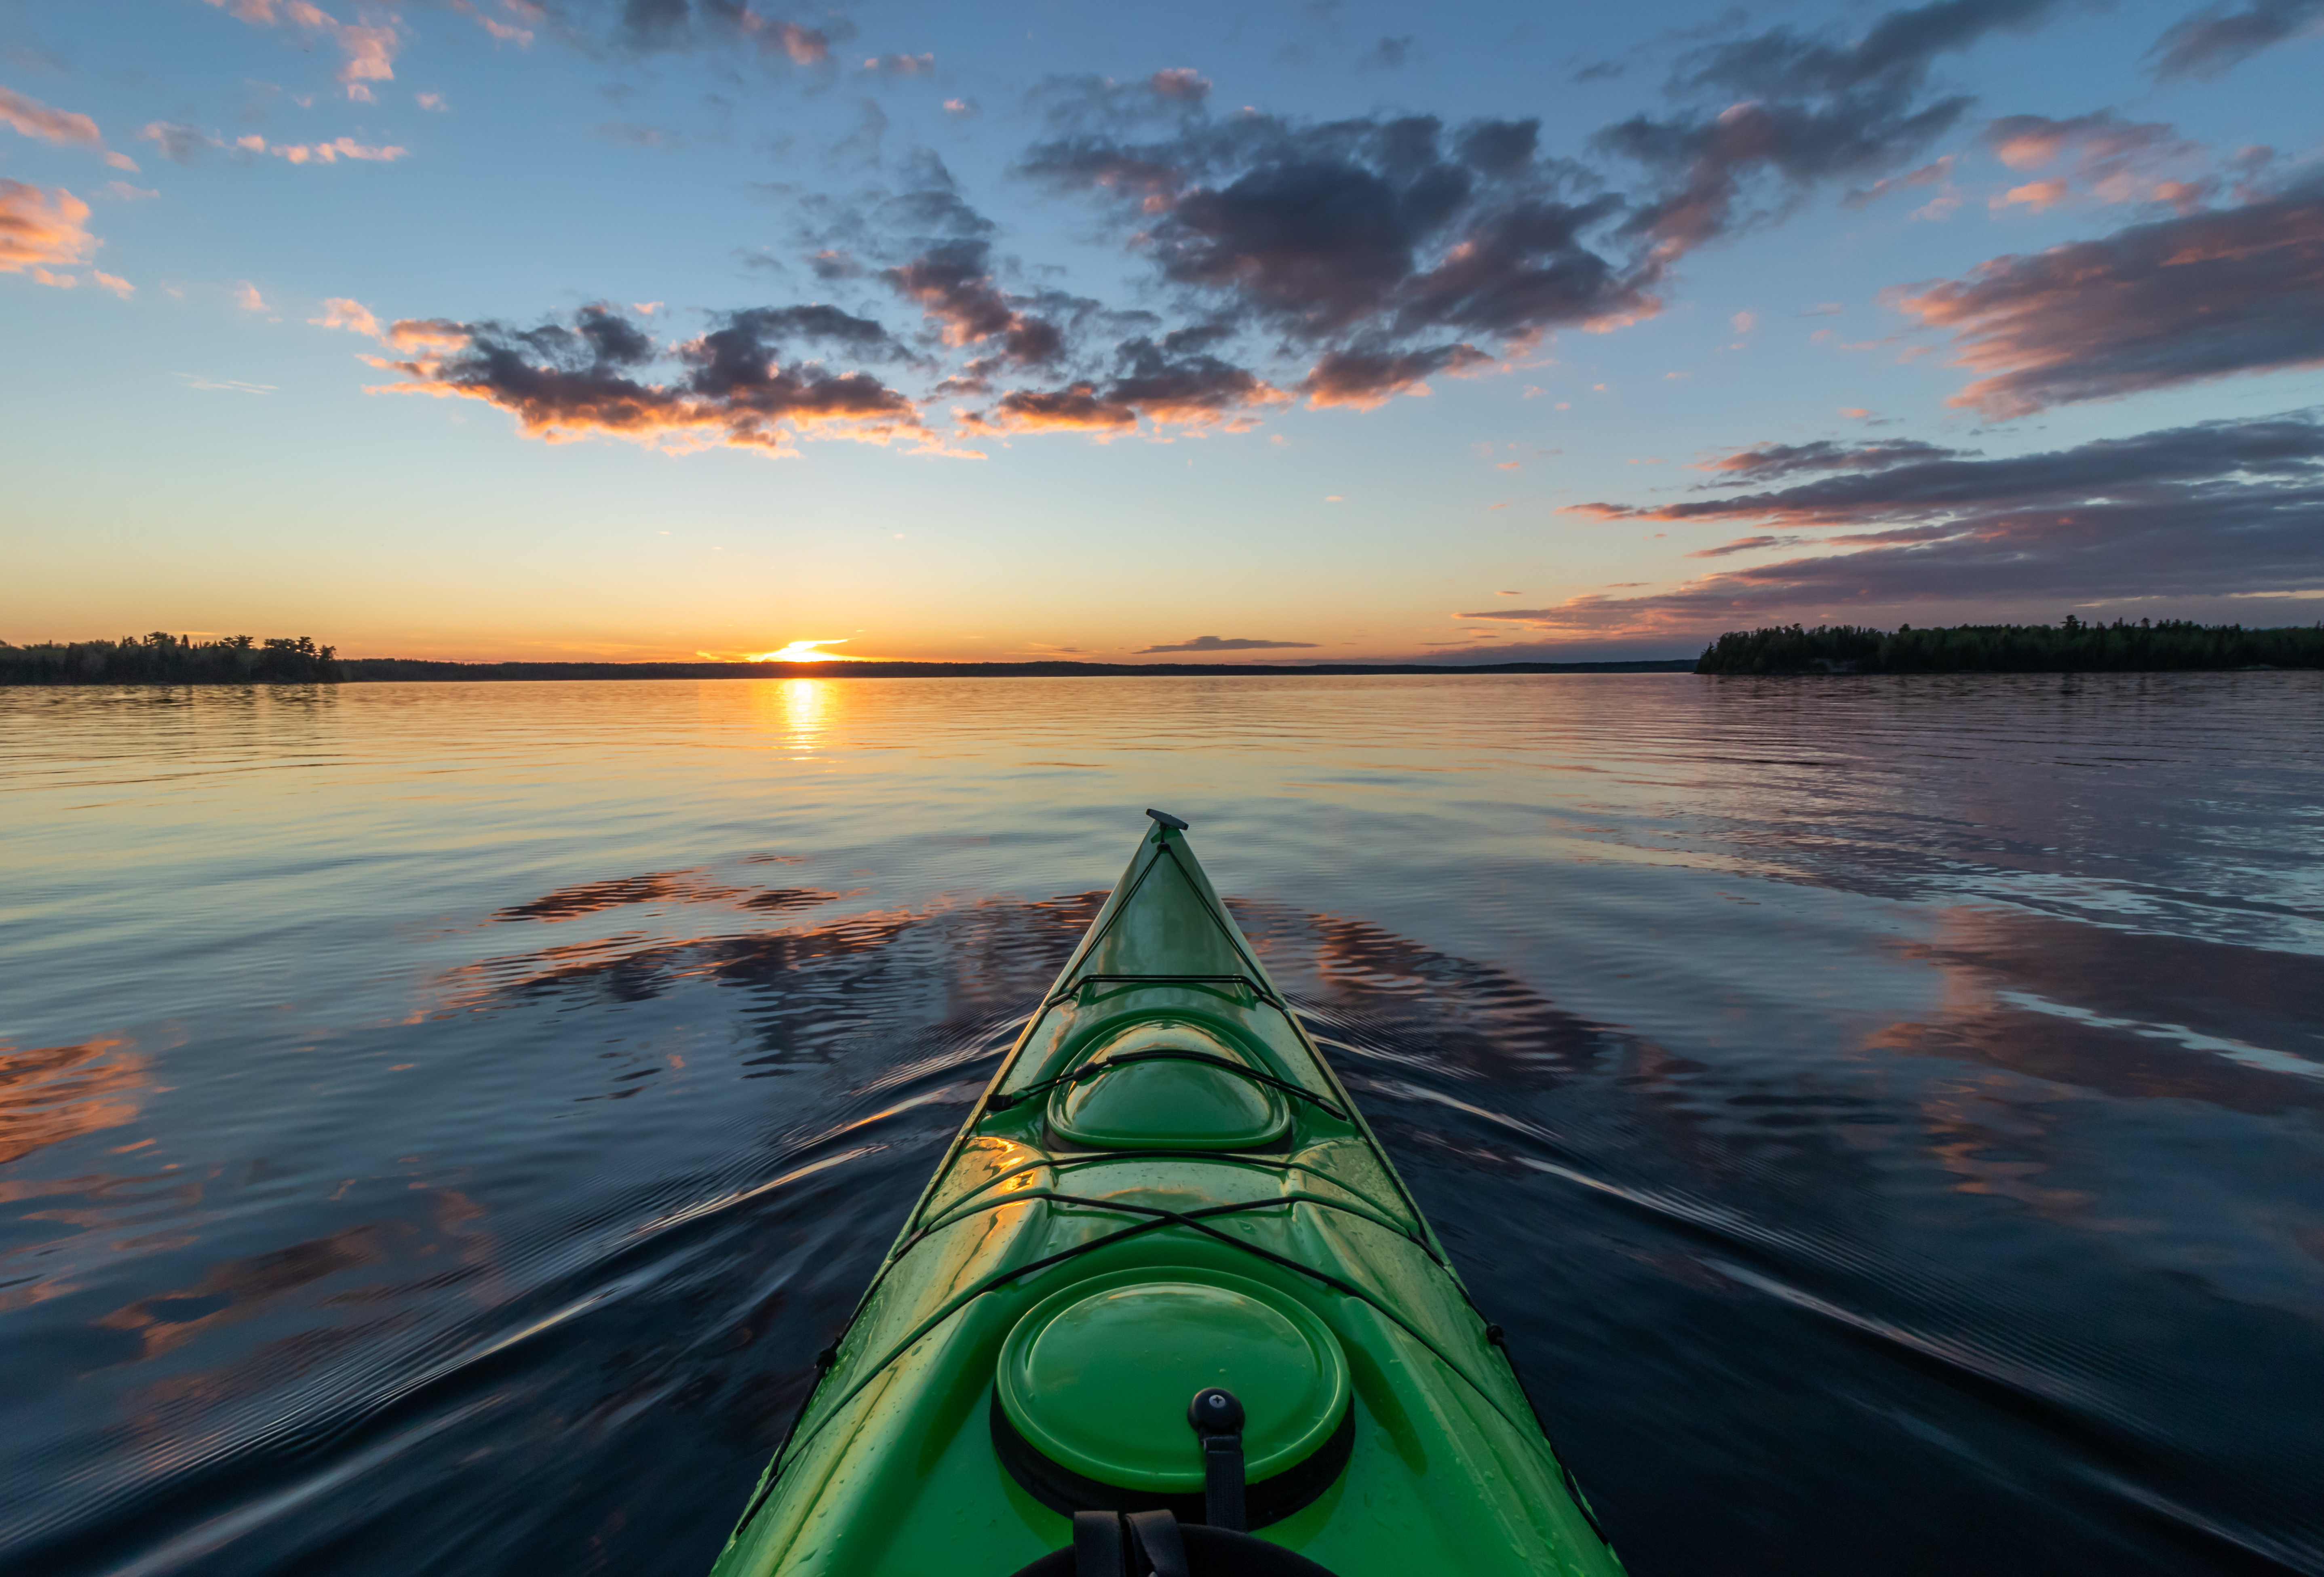 Kayaking on the lake at sunset